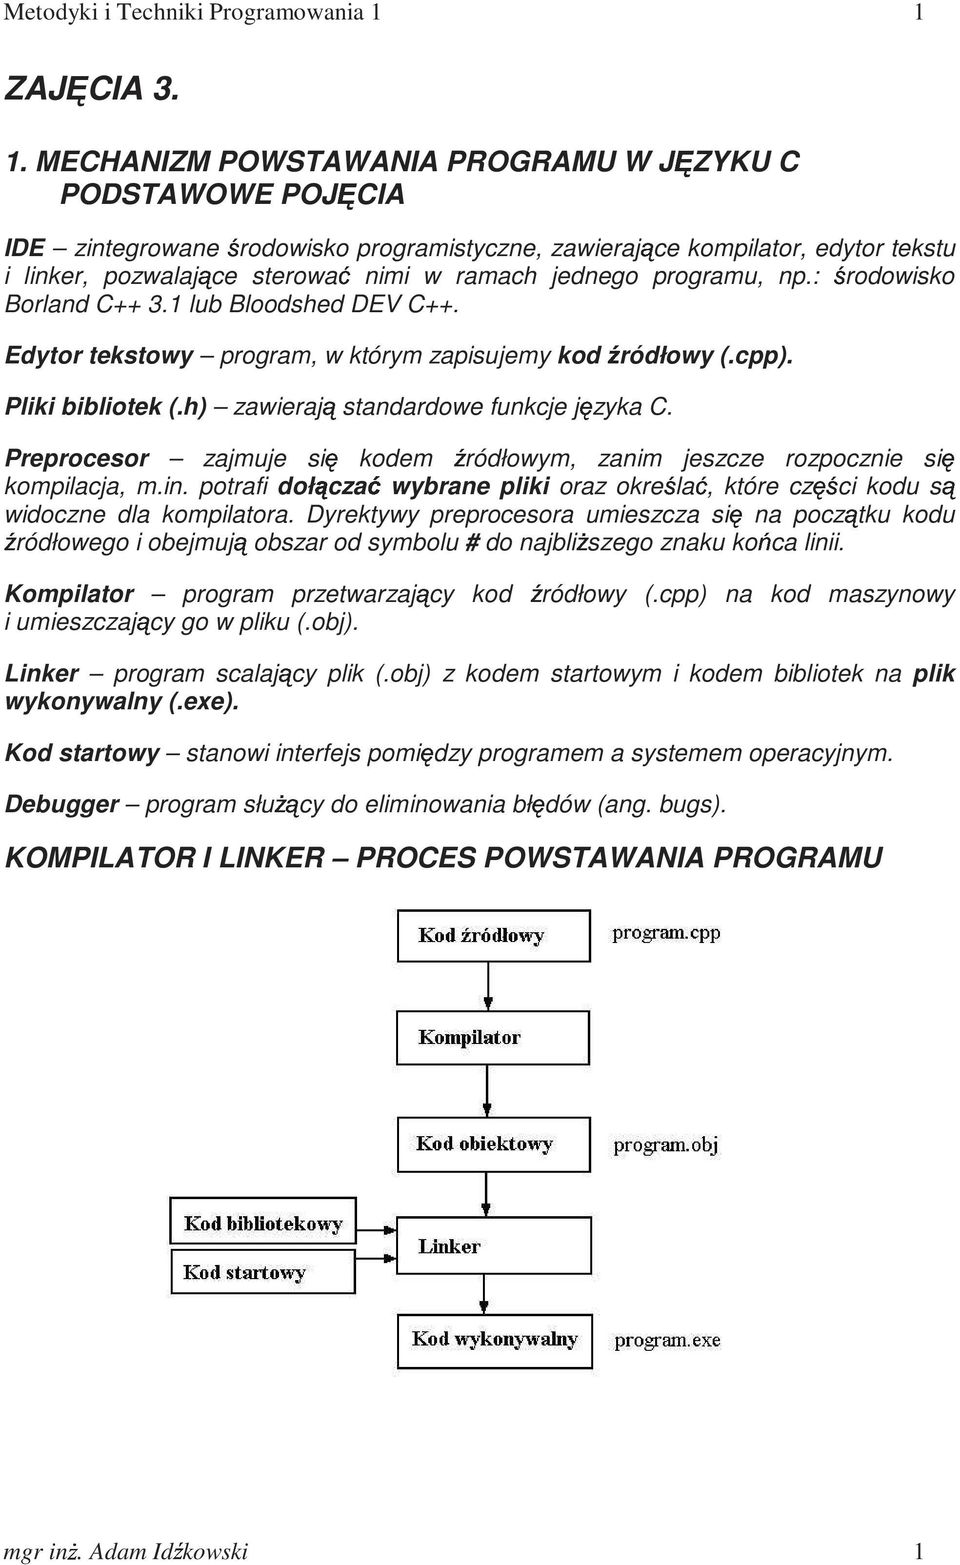 MECHANIZM POWSTAWANIA PROGRAMU W JĘZYKU C PODSTAWOWE POJĘCIA IDE zintegrowane środowisko programistyczne, zawierające kompilator, edytor tekstu i linker, pozwalające sterować nimi w ramach jednego